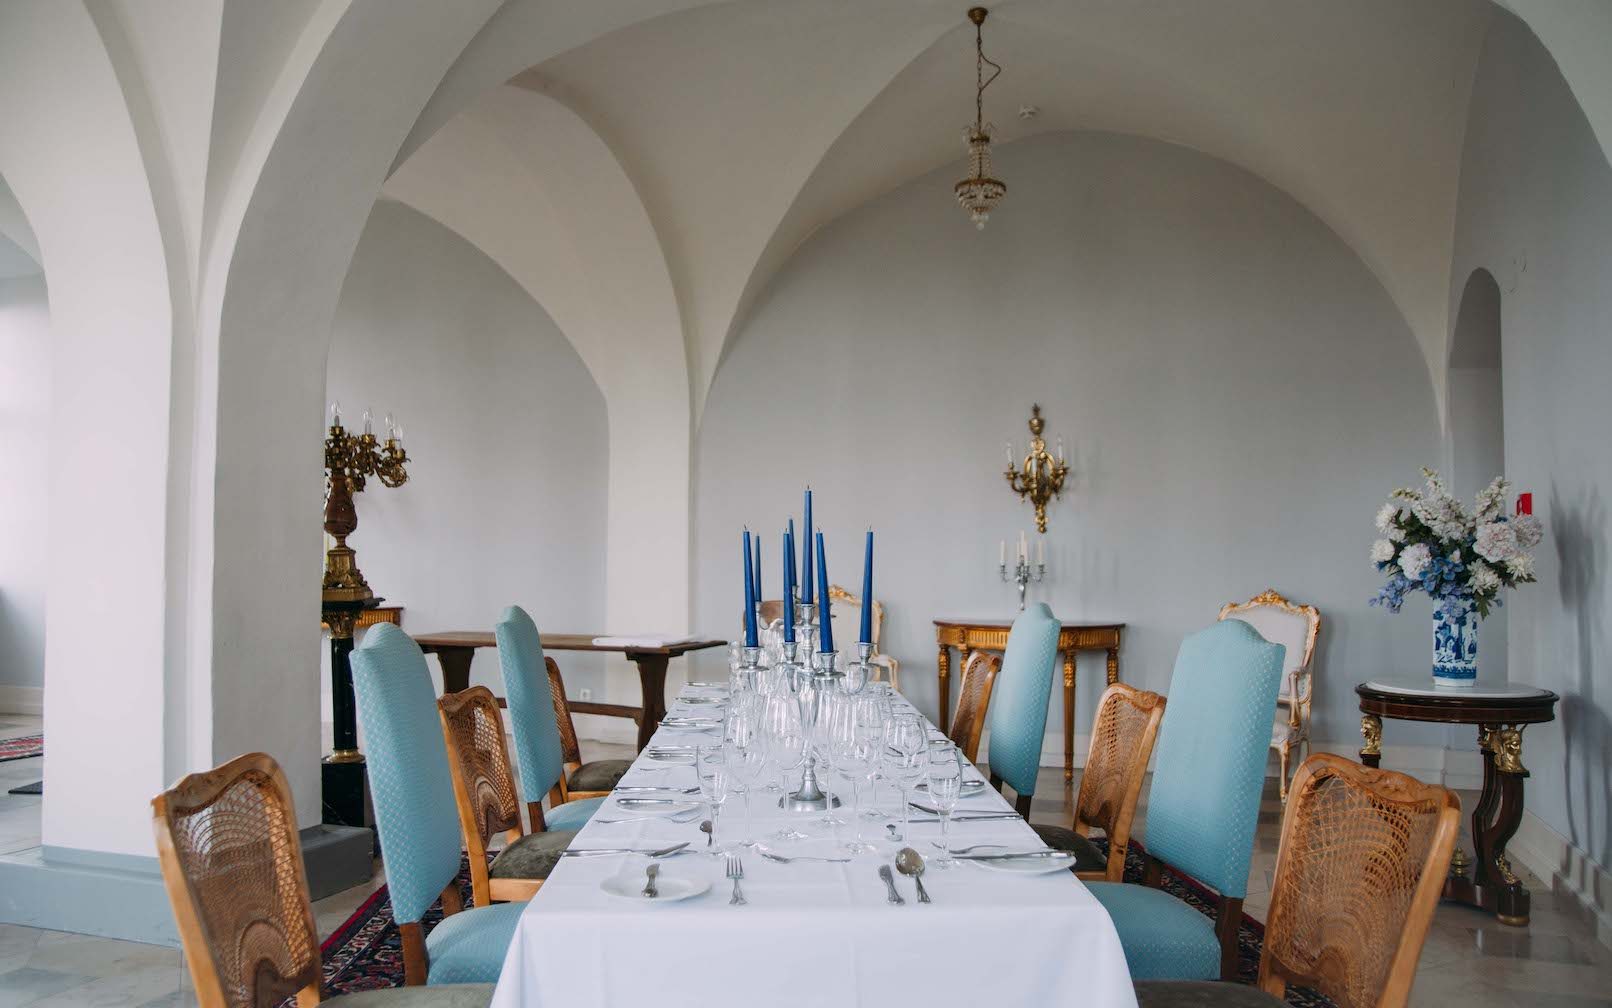 Der Kreuzsaal befindet sich im Untergeschoss. Ein hell eingedeckter rechteckiger Tisch mit Kerzenständer in der Mitte. Der Raum zeichnet sich durch die Rundbogendecke und massiven Pfähle aus.